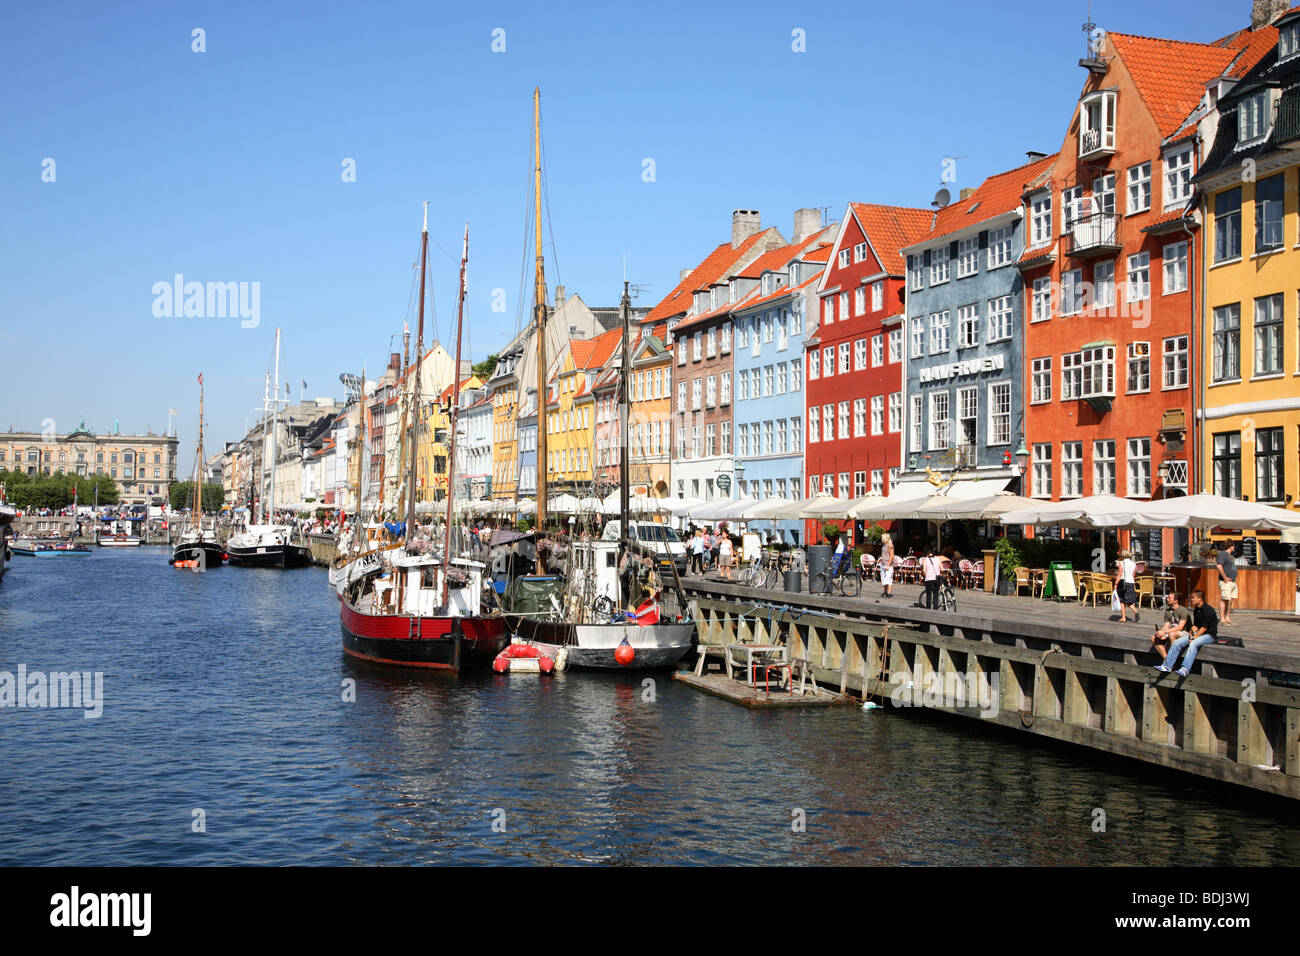 Am Kanal in Nyhavn, Kopenhagen, die alten Hafen Viertel berühmt für die alten bemalten Häusern, Restaurants, Bars und Kreuzfahrten. Stockfoto